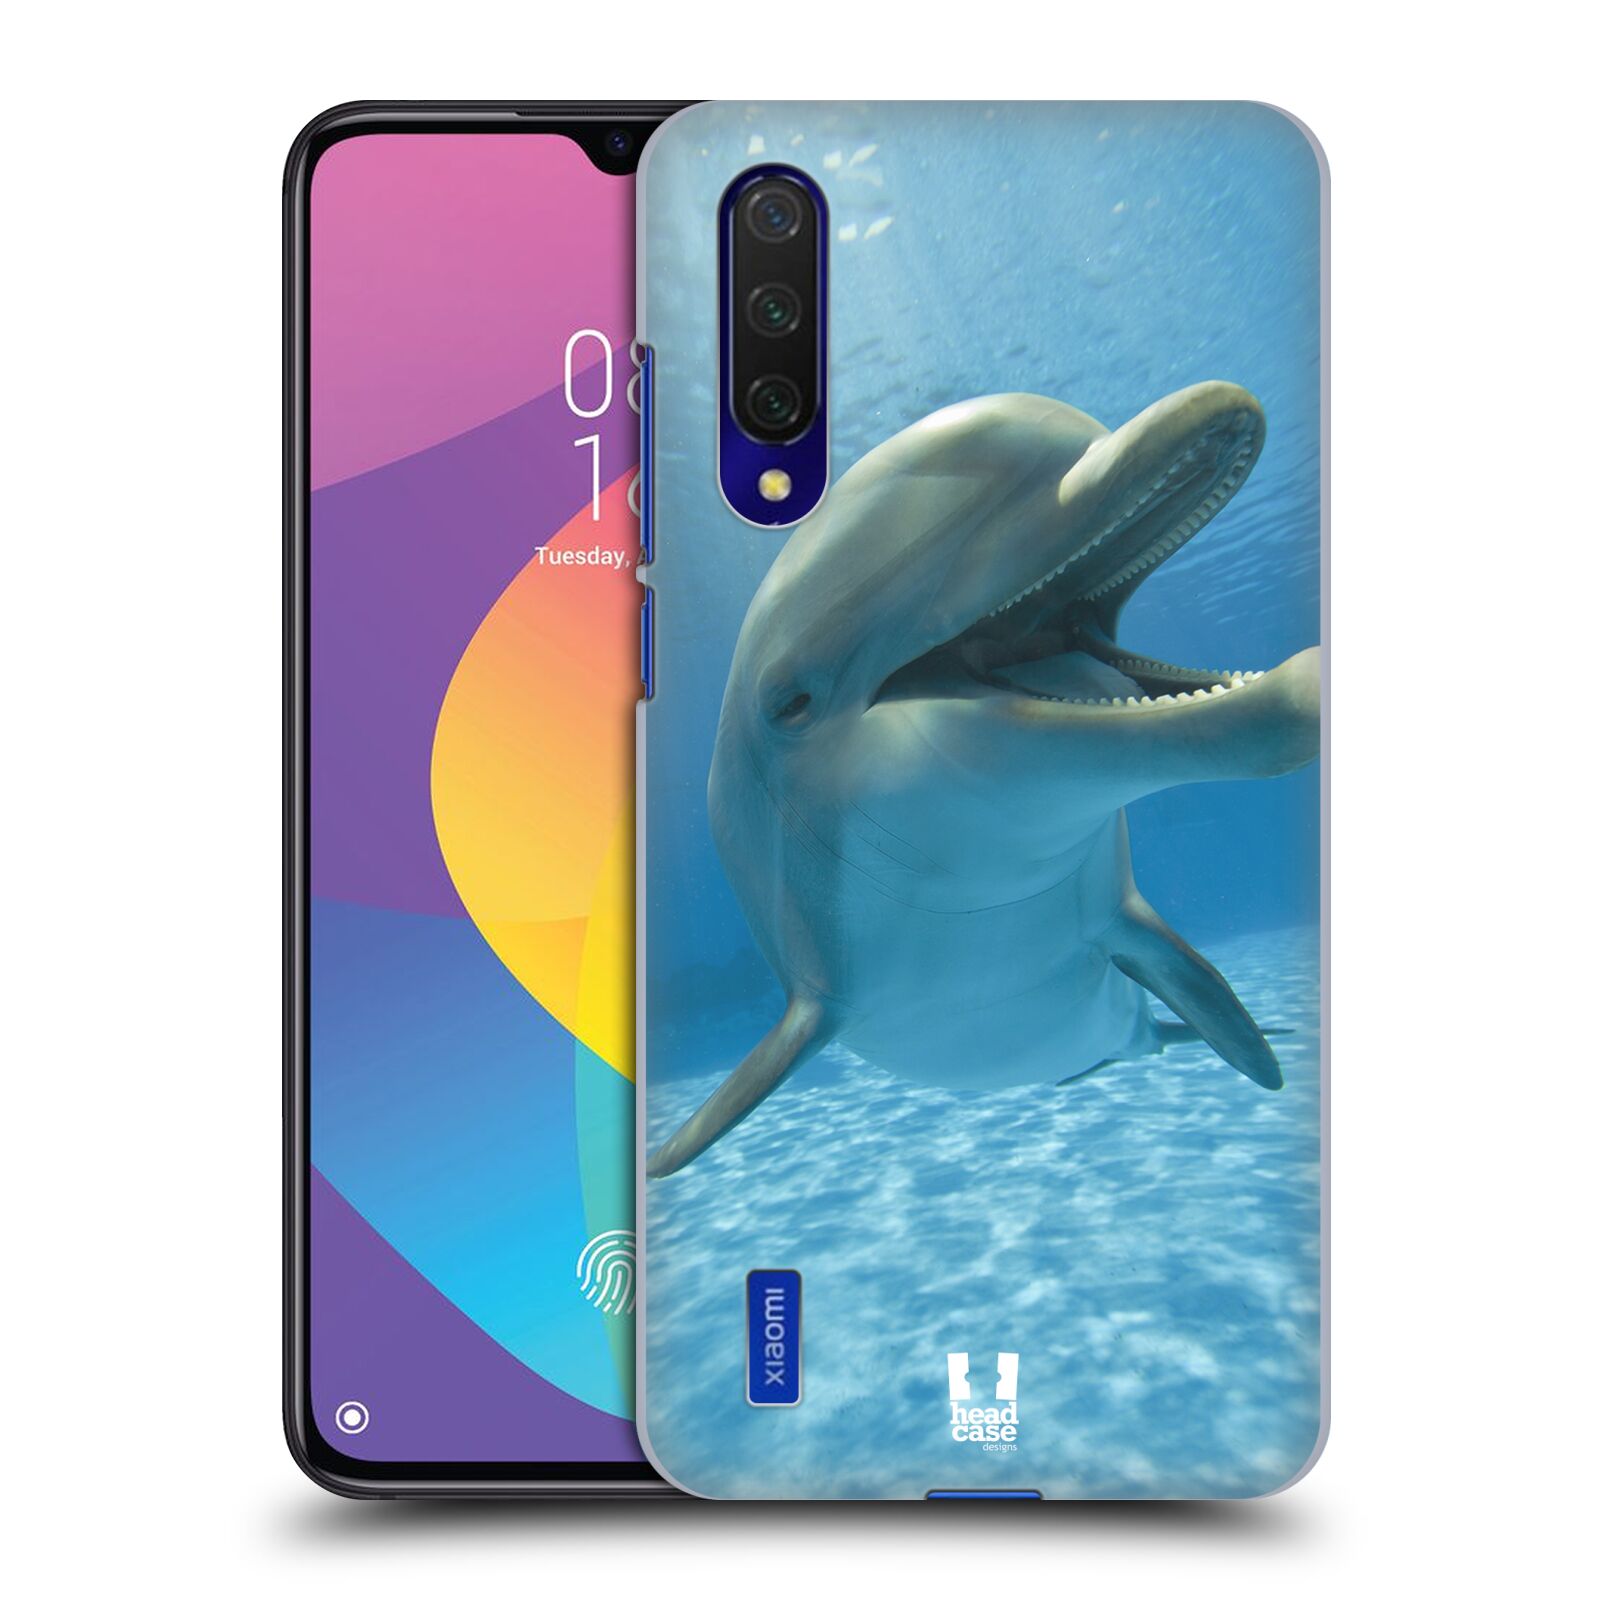 Zadní obal pro mobil Xiaomi Mi 9 LITE - HEAD CASE - Svět zvířat delfín v moři